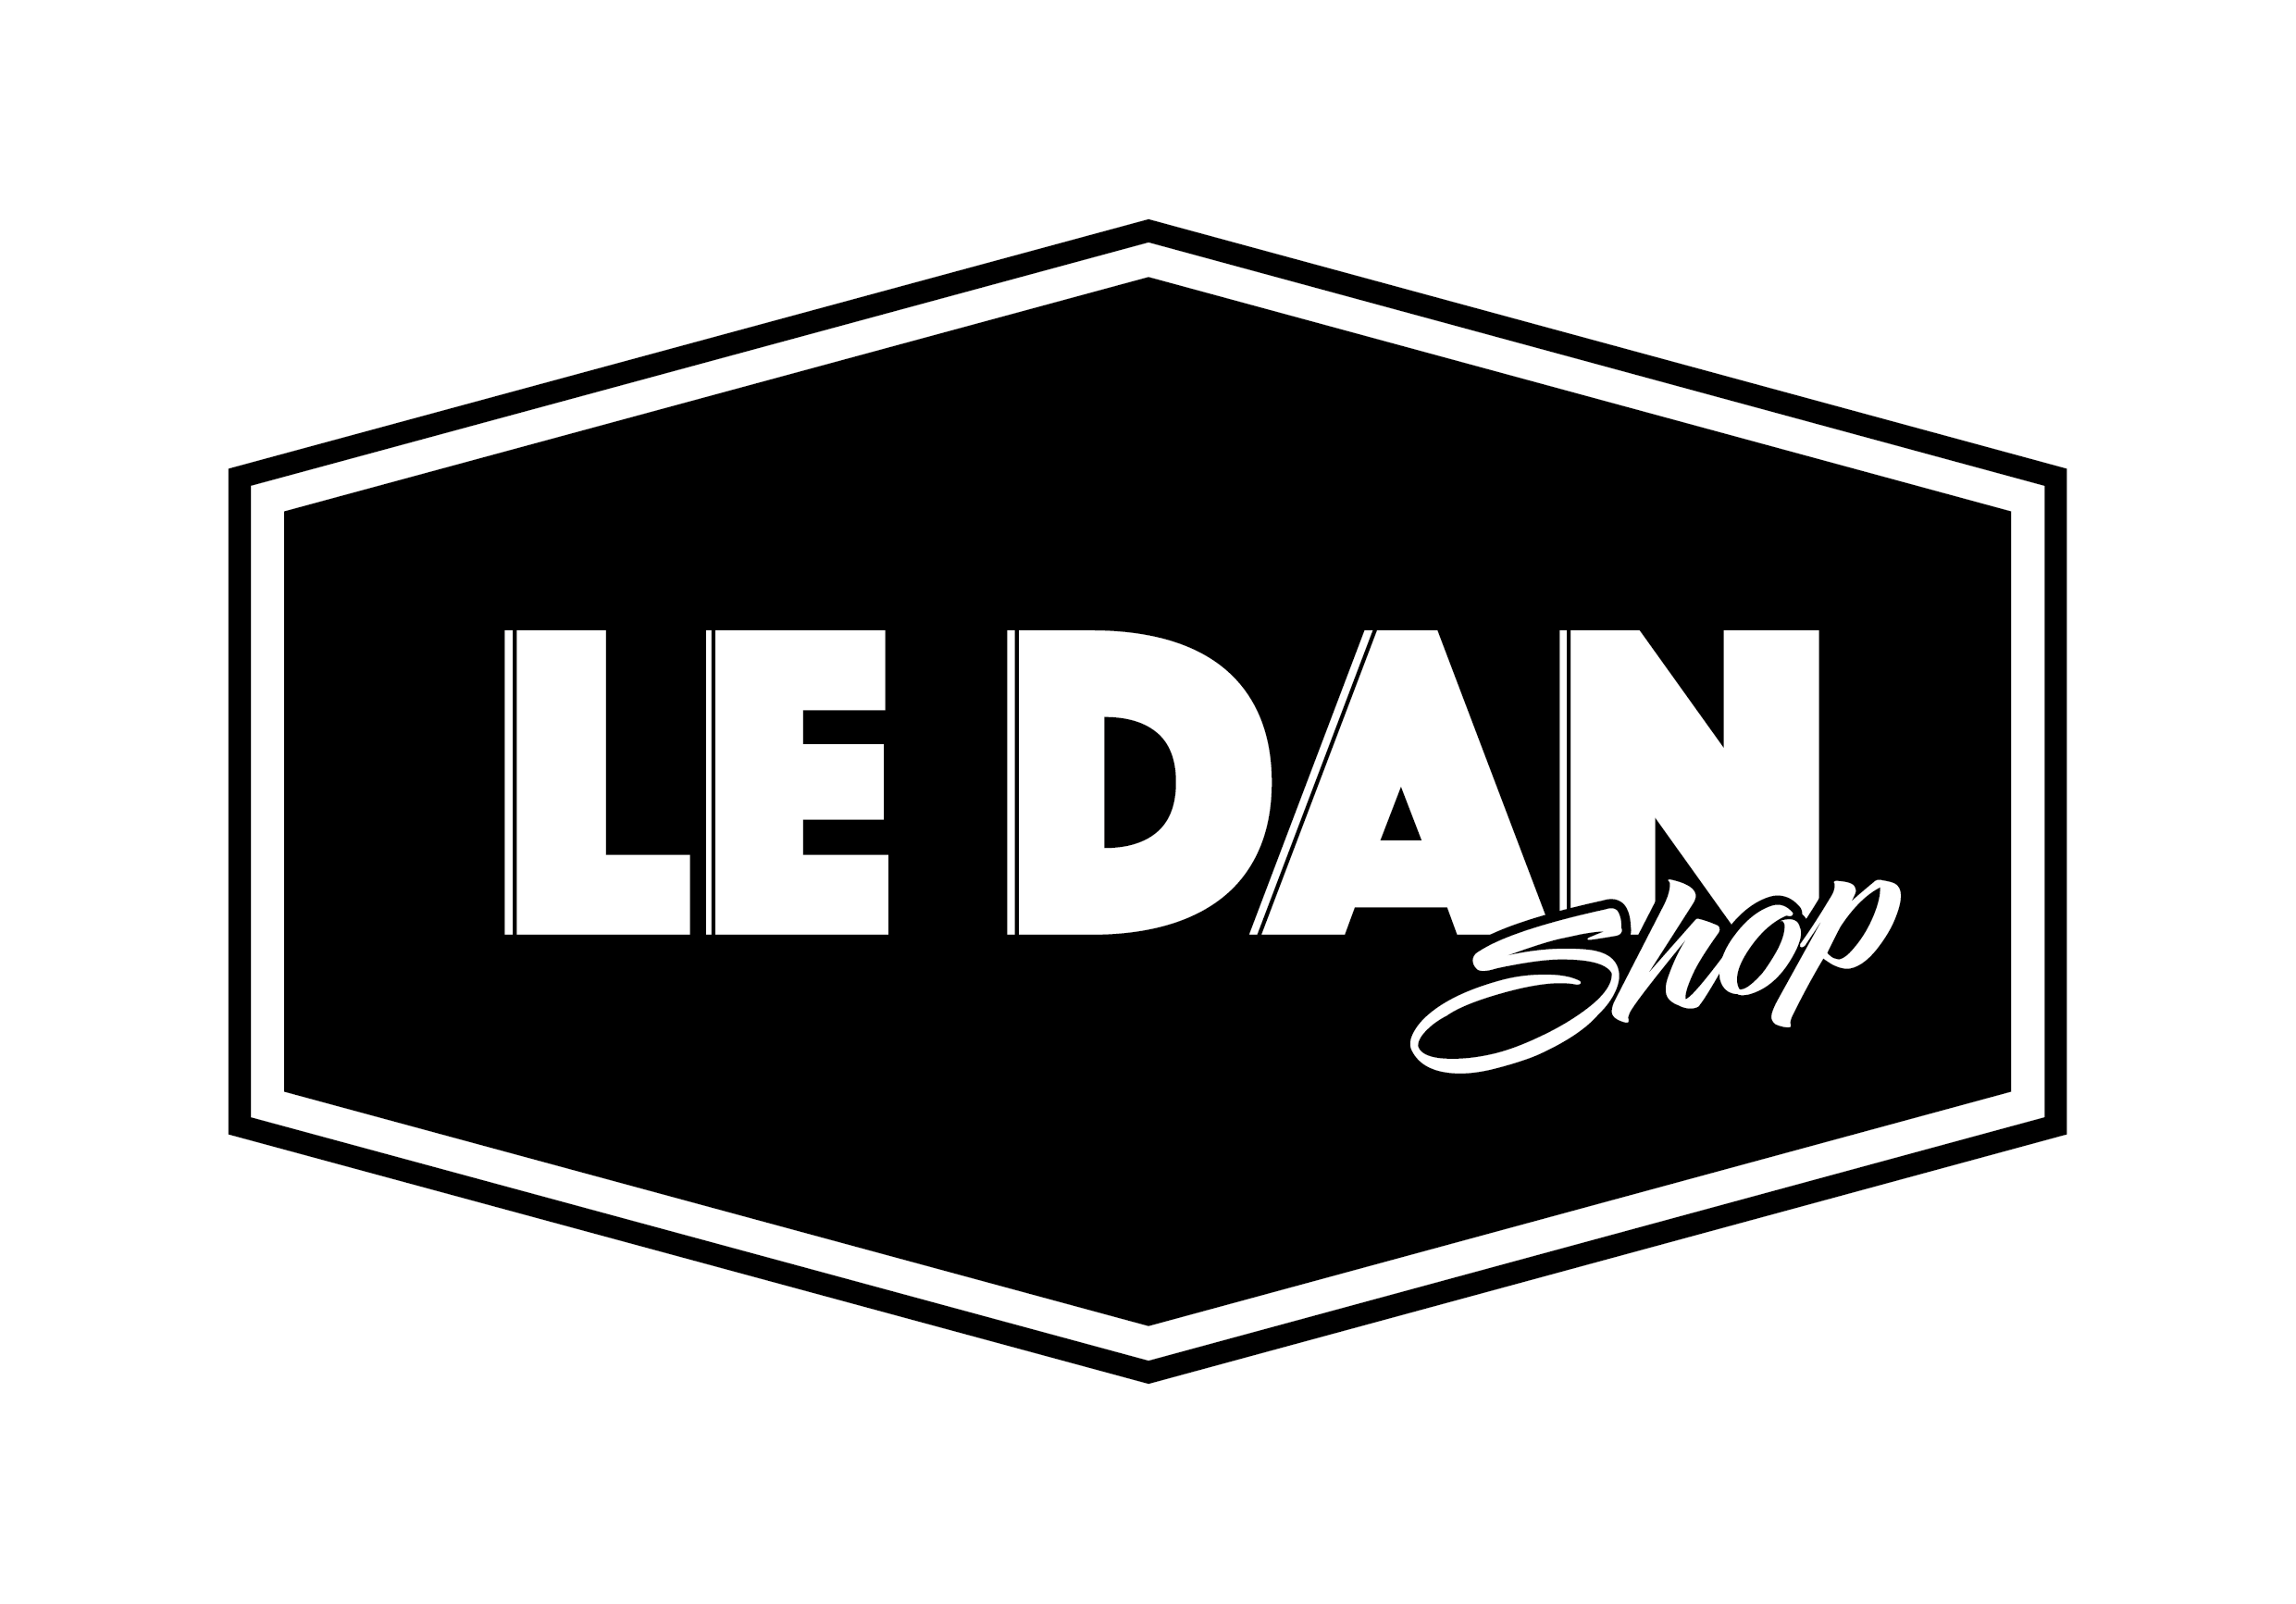 Le Dan Shop